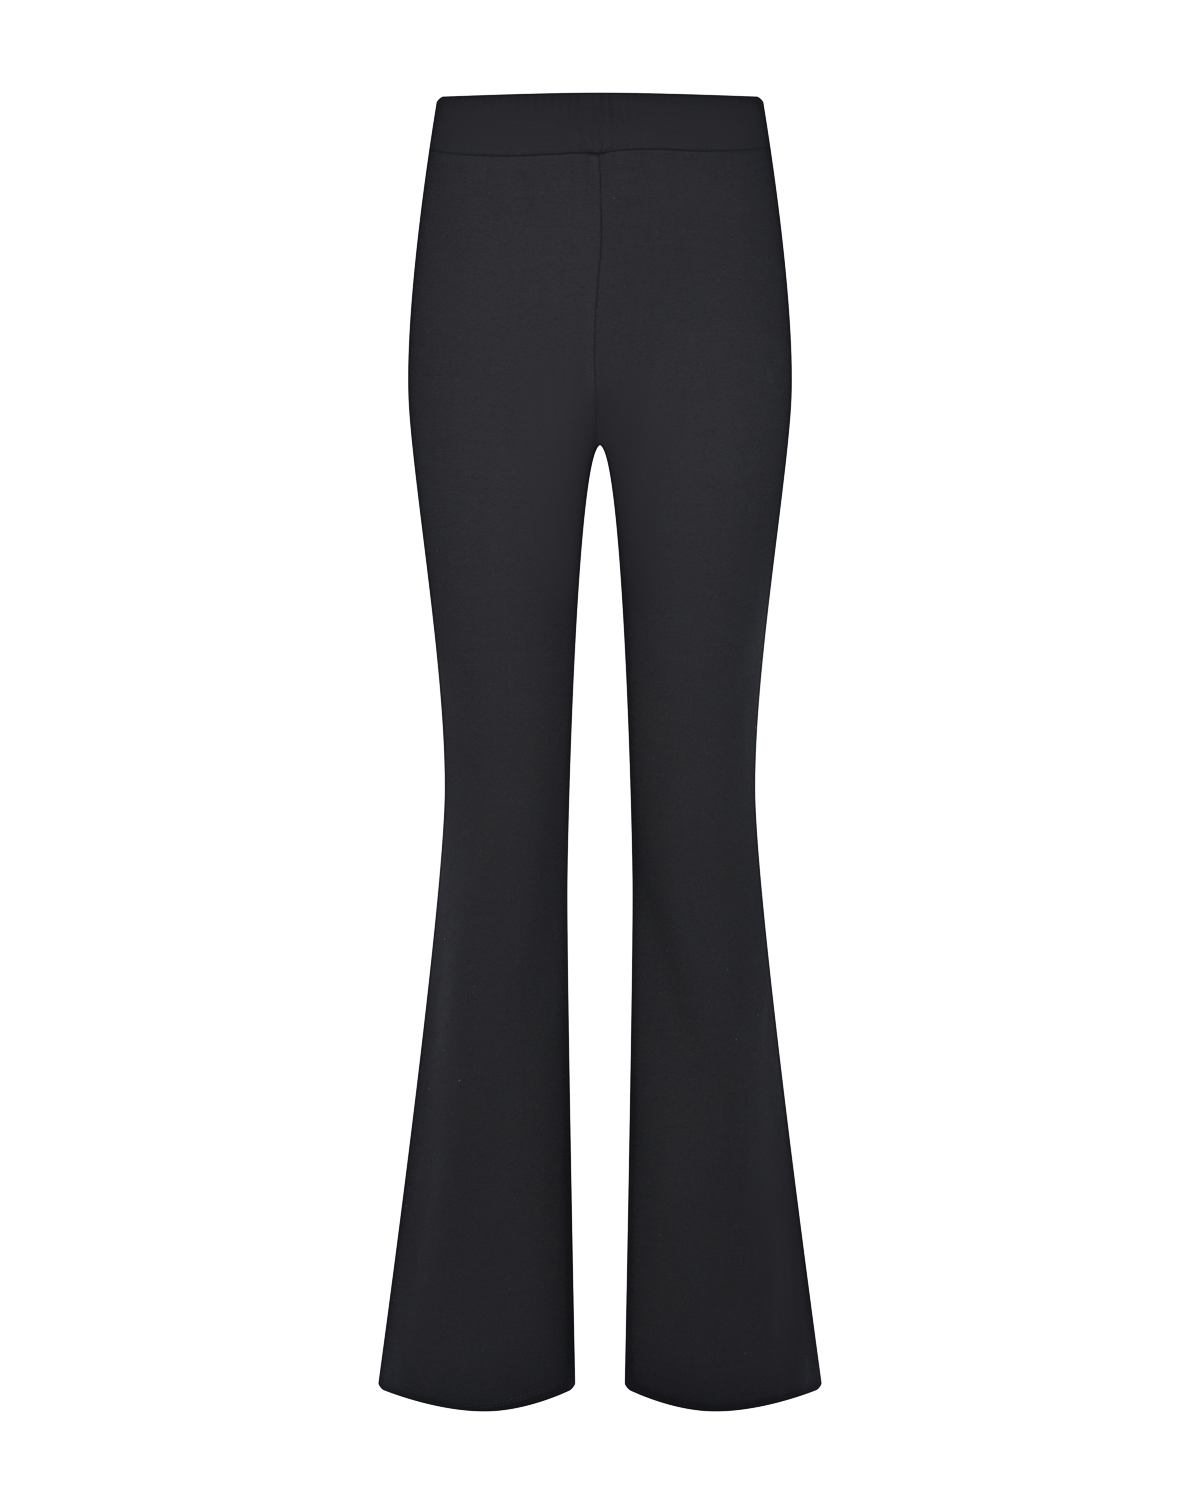 Черные брюки клеш Dan Maralex, размер 42, цвет черный